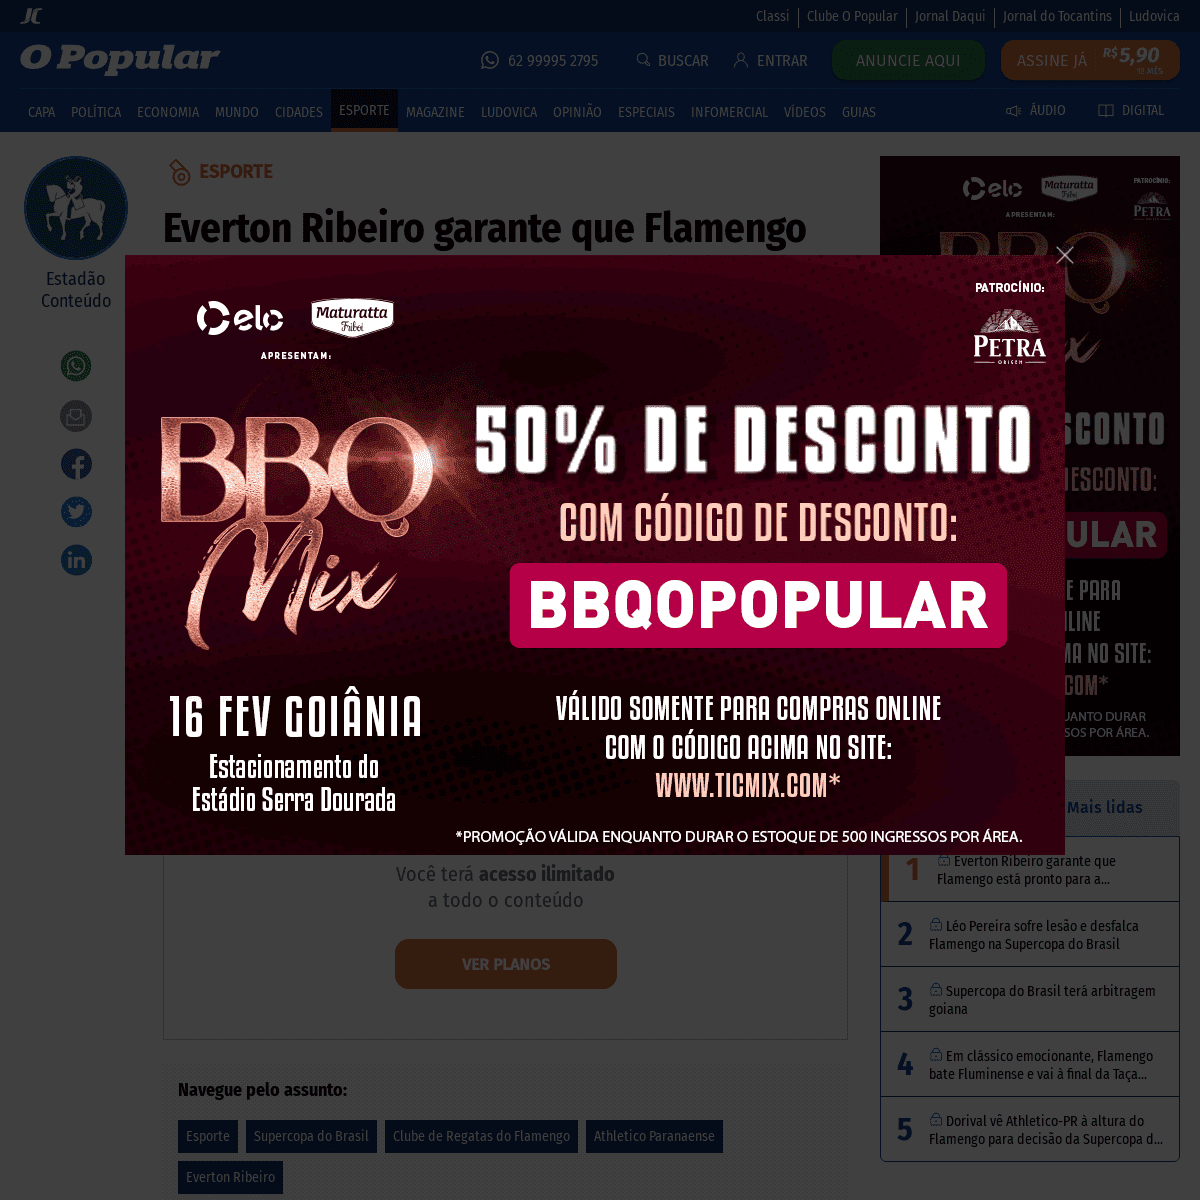 A complete backup of www.opopular.com.br/noticias/esporte/everton-ribeiro-garante-que-flamengo-est%C3%A1-pronto-para-a-supercopa